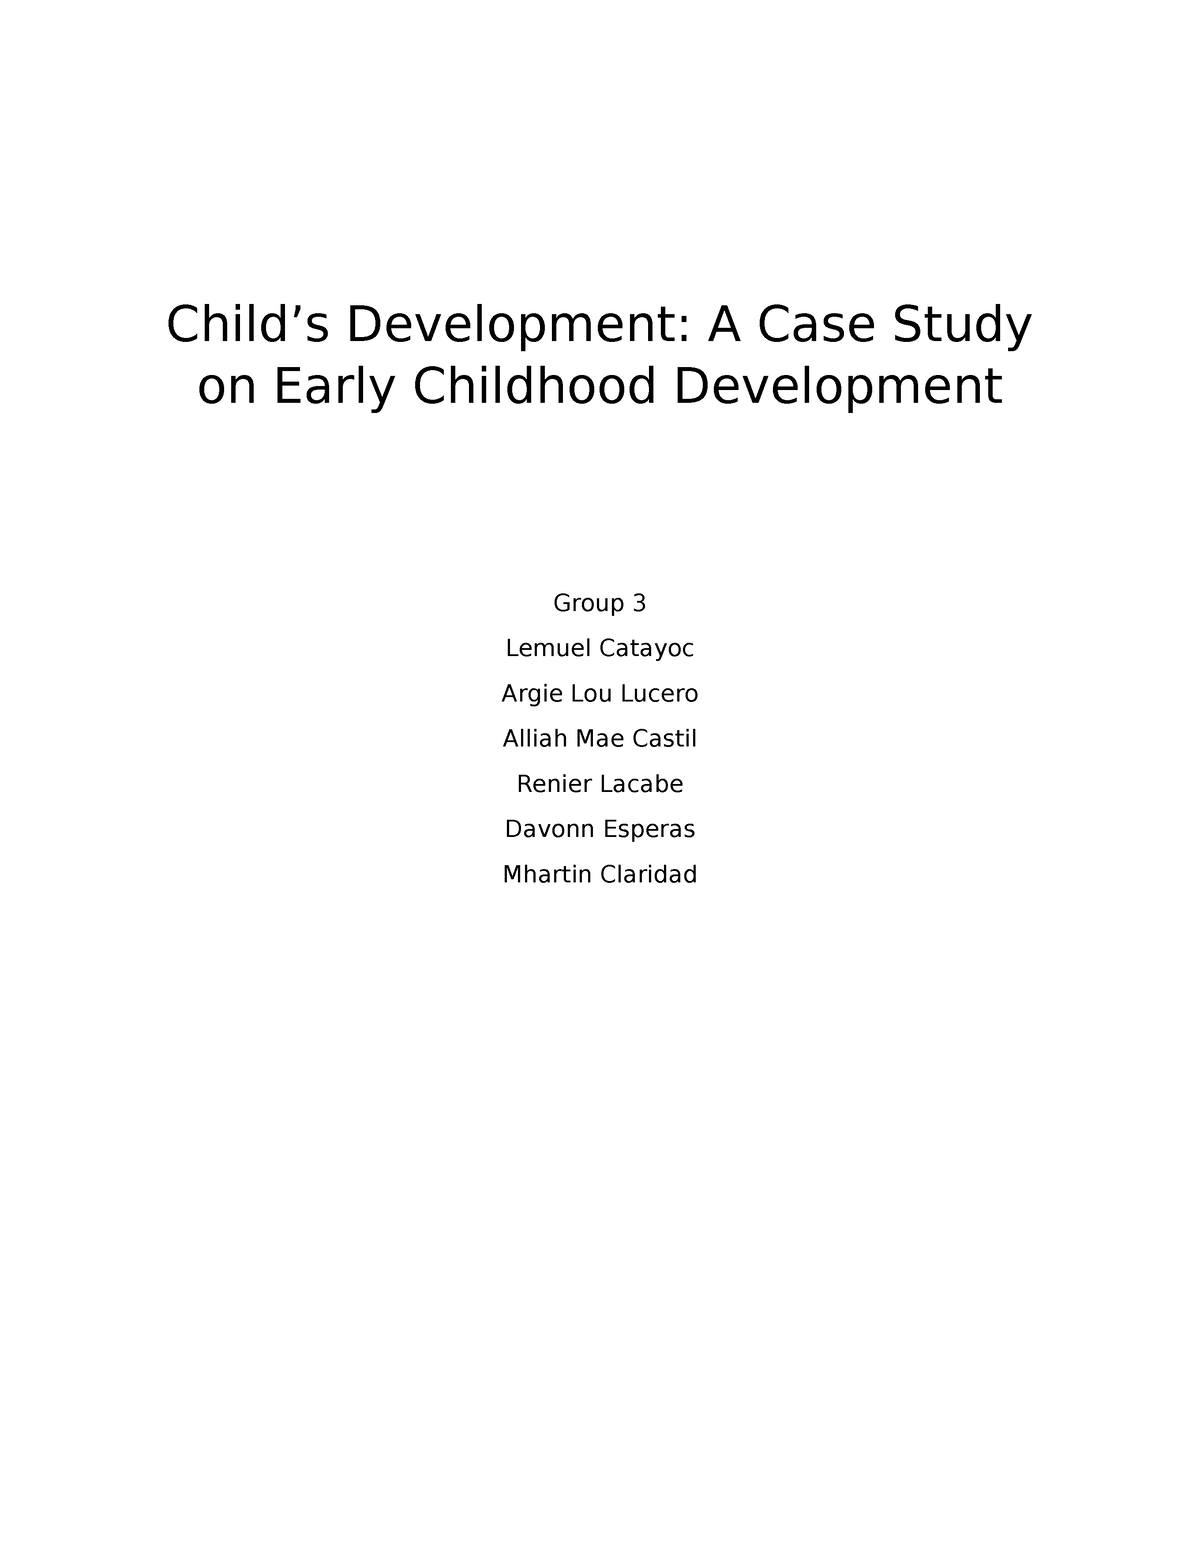 case study child development example